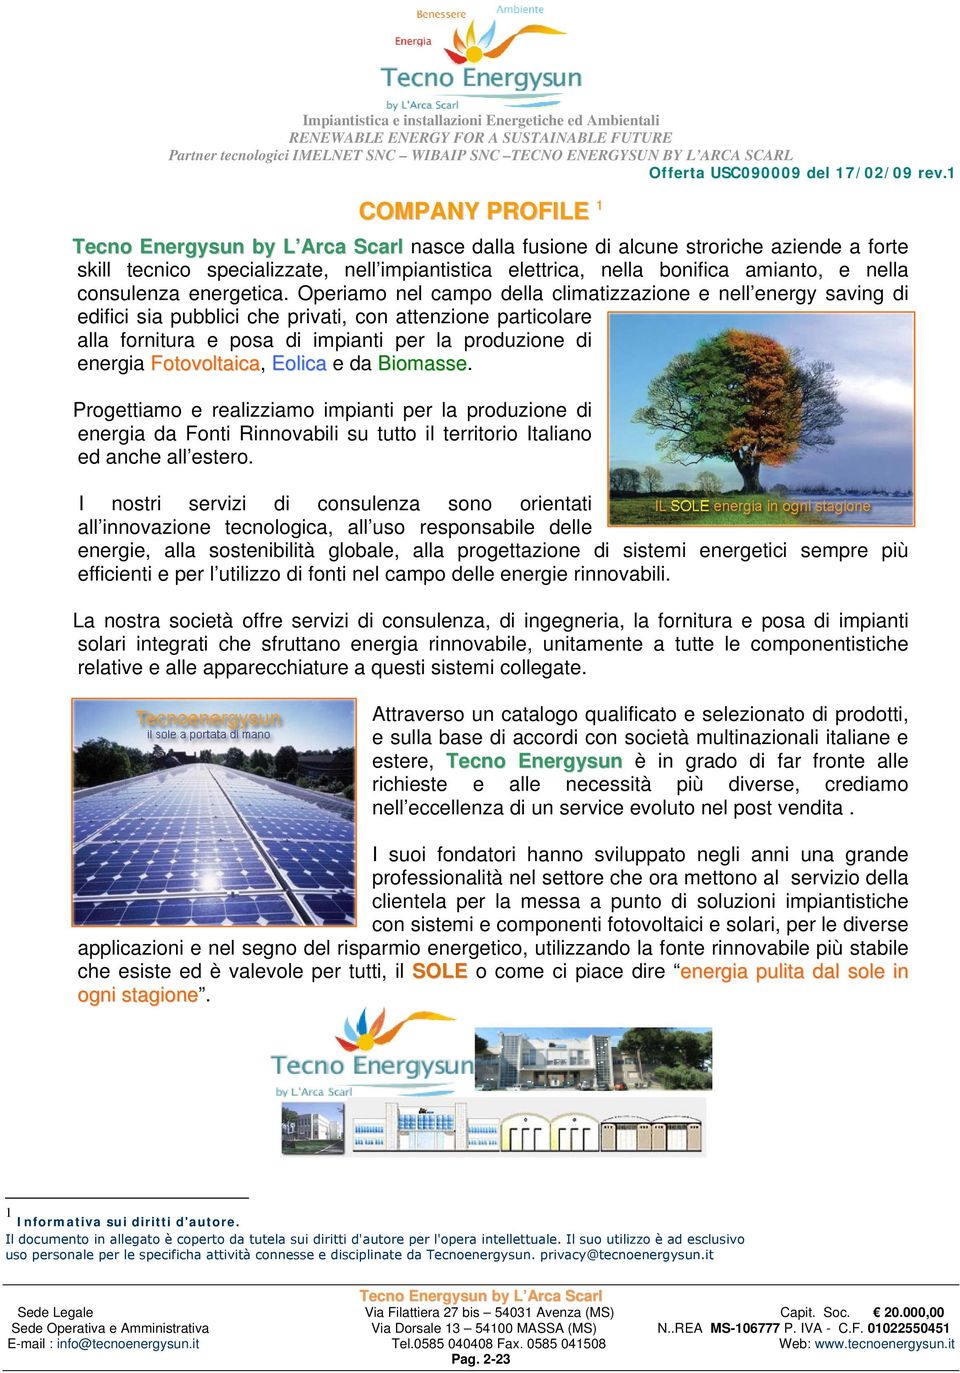 Fotovoltaica, Eolica e da Biomasse. Progettiamo e realizziamo impianti per la produzione di energia da Fonti Rinnovabili su tutto il territorio Italiano ed anche all estero.